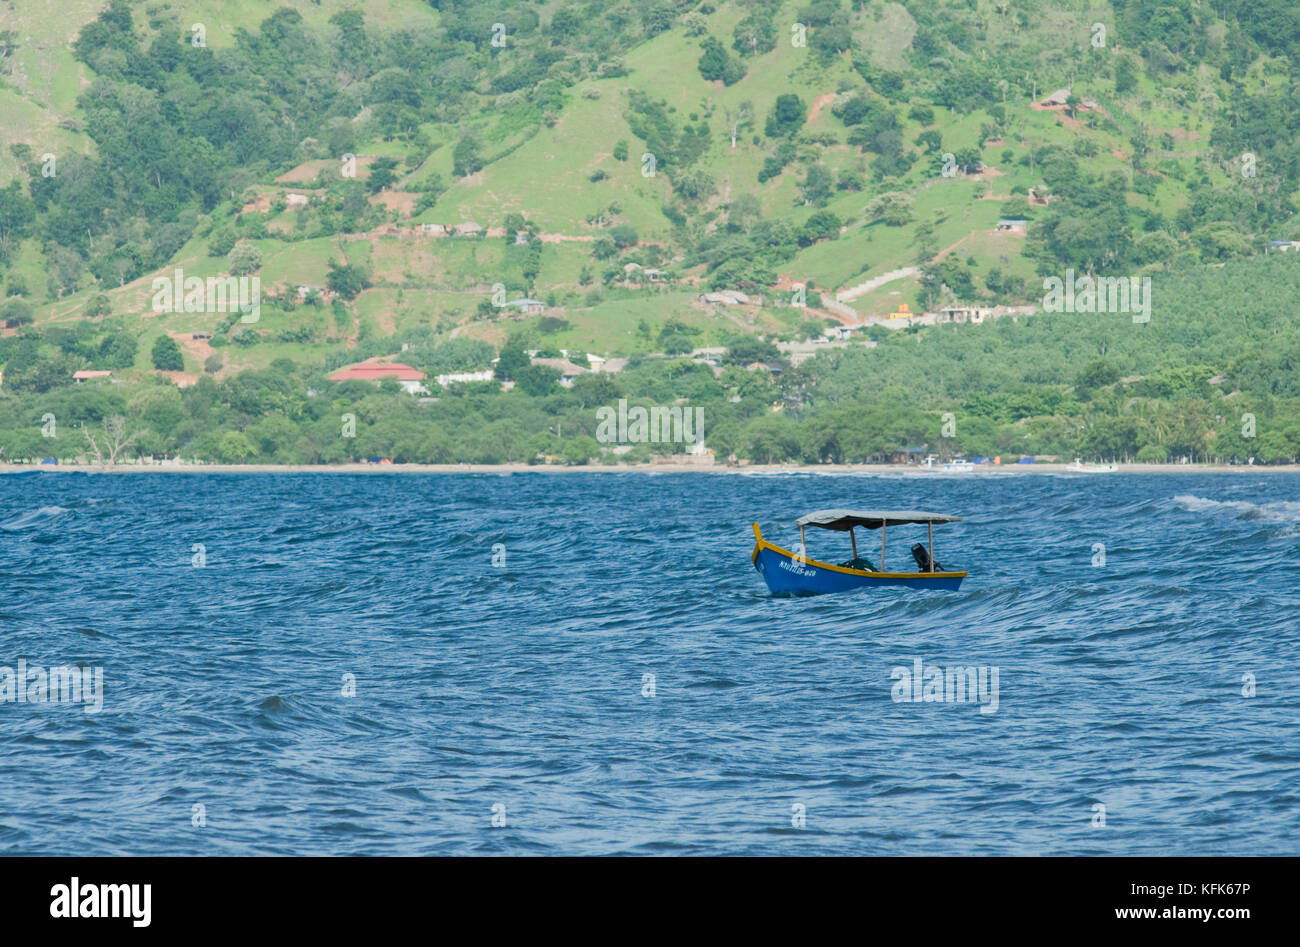 Bateau de pêche à Dili, Timor-Leste (Timor oriental) Banque D'Images